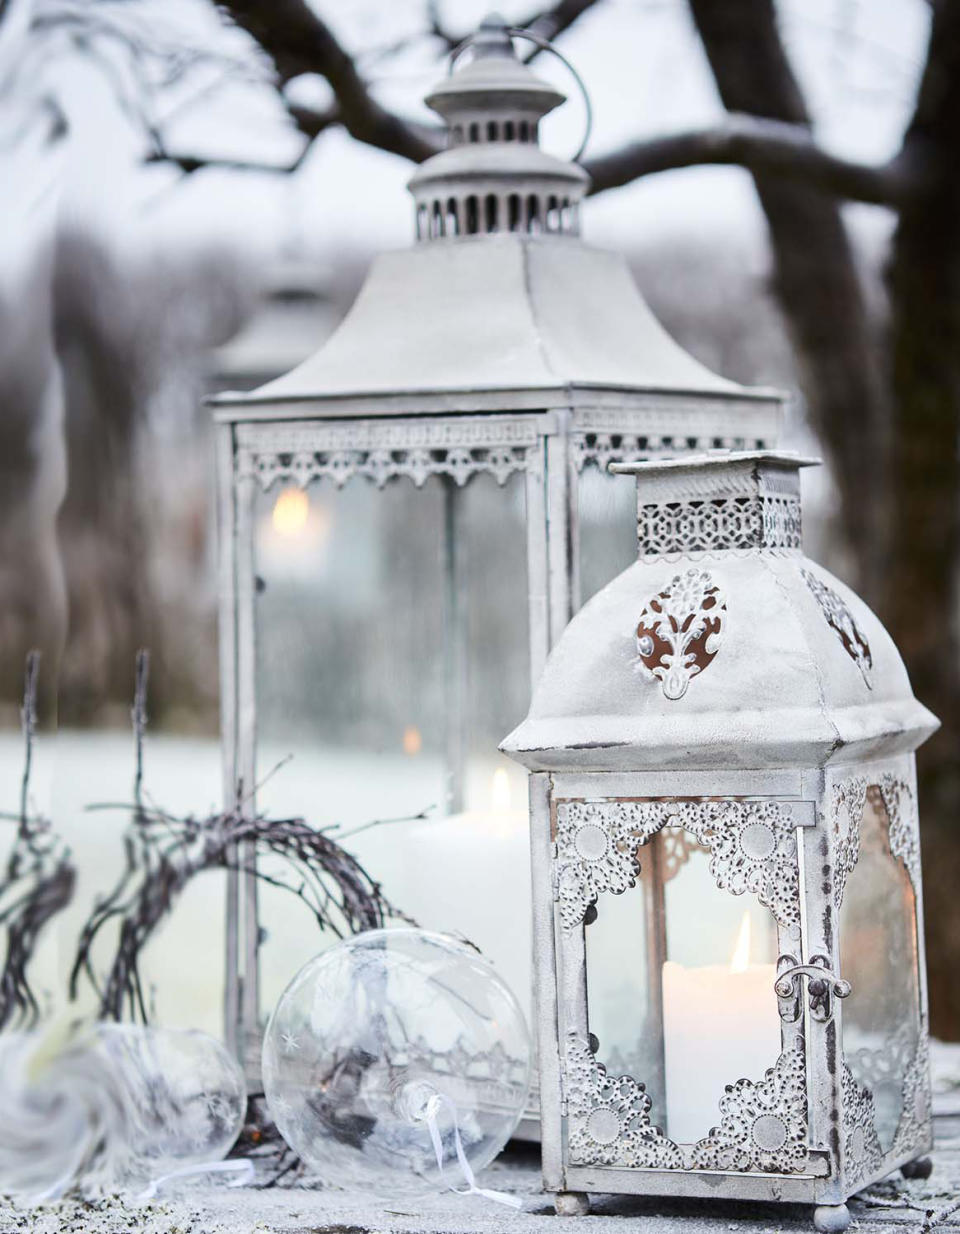 Décoration de Noël extérieur : des lanternes anciennes